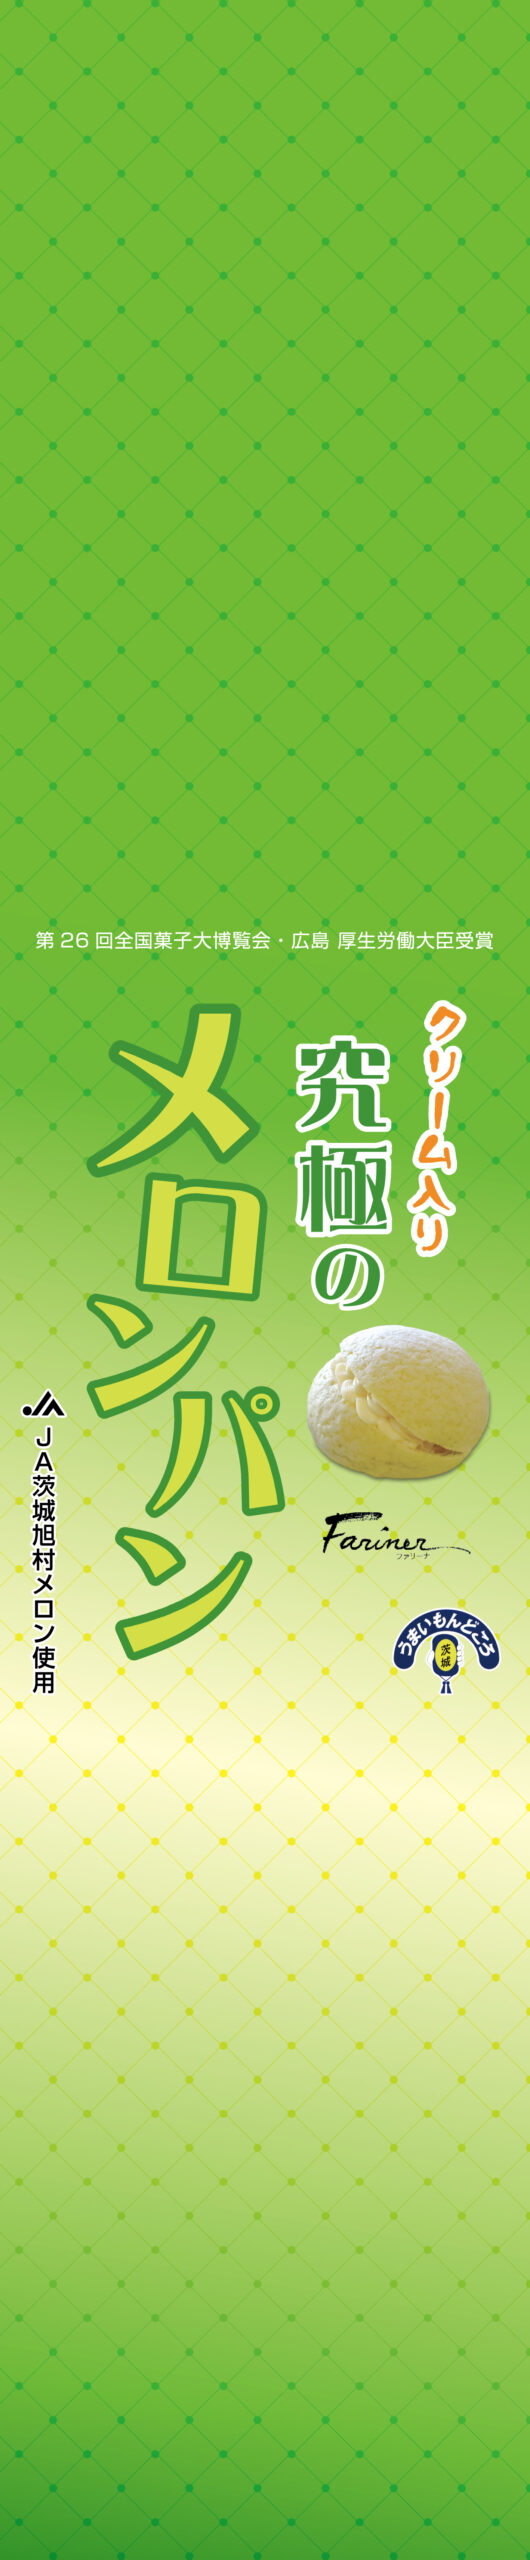 鹿島製菓・ファリーナ 巻紙